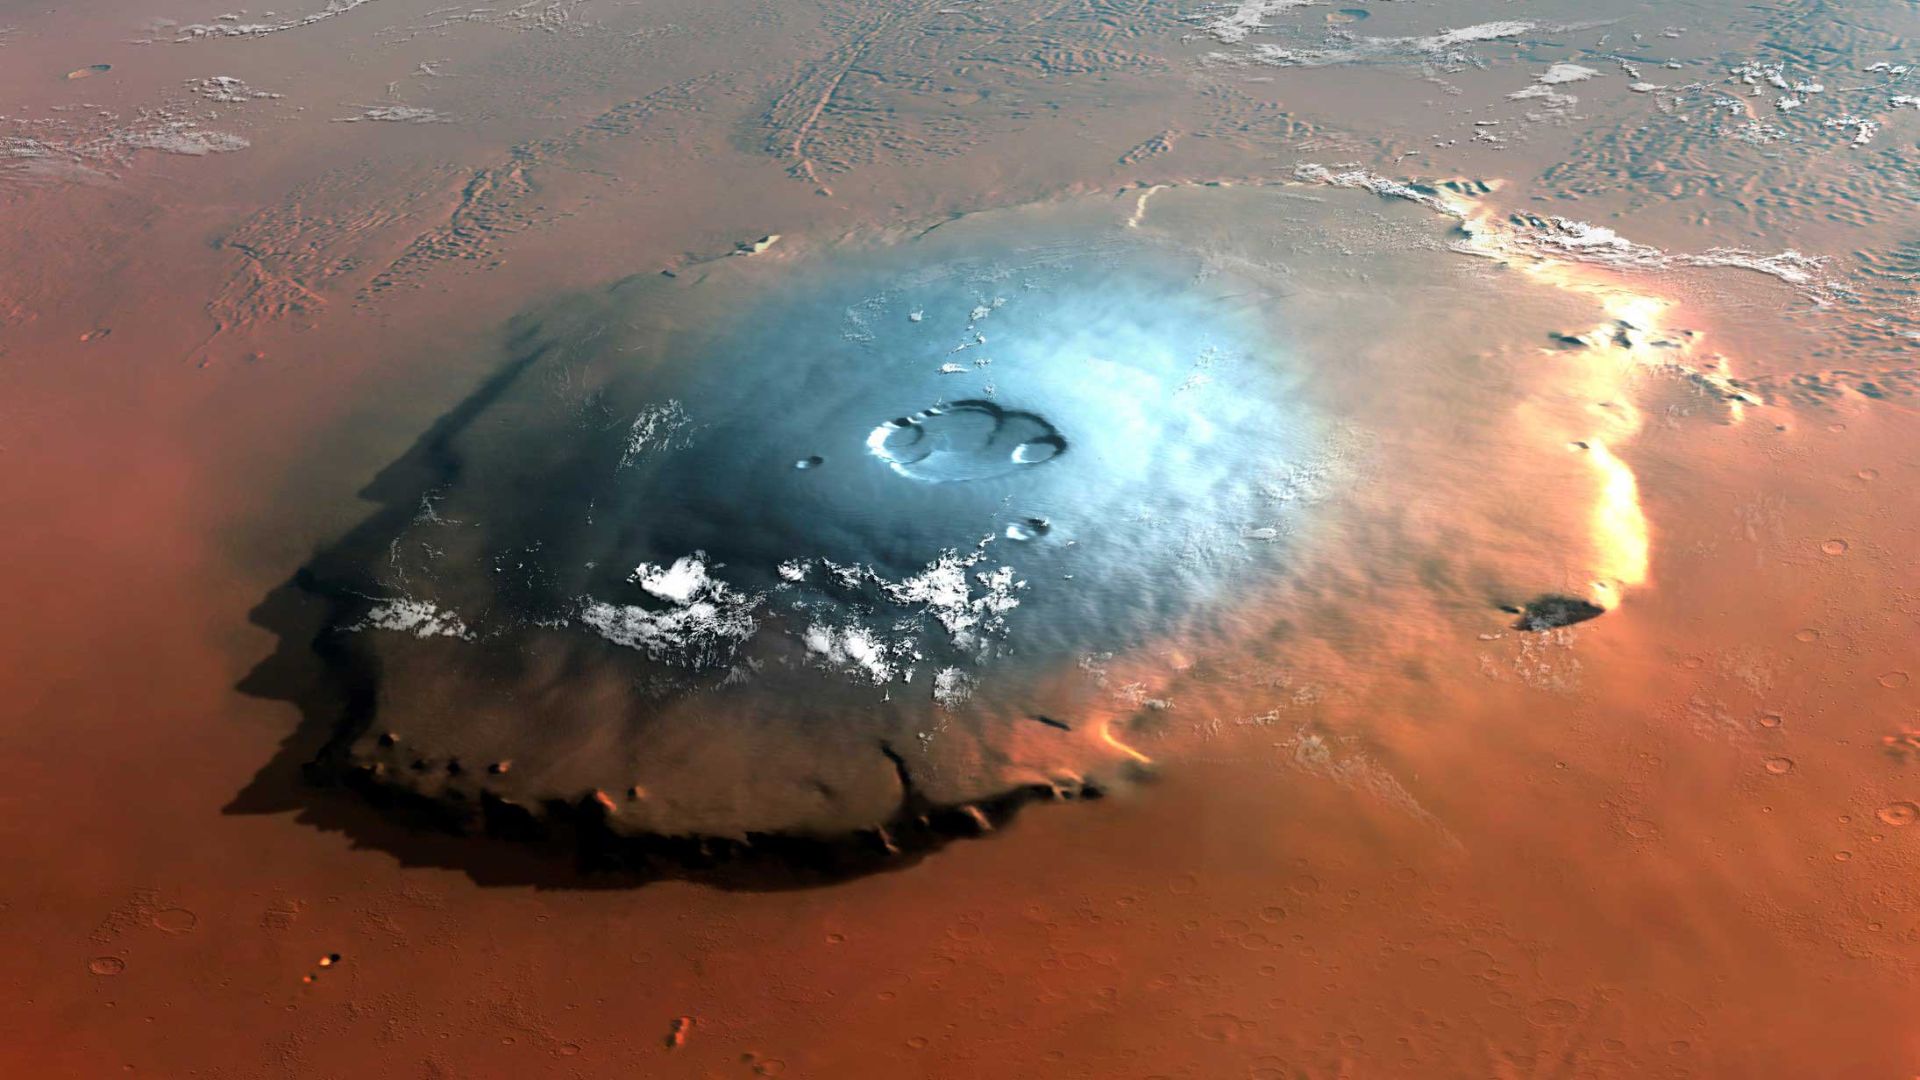 Mount Olympus on Mars